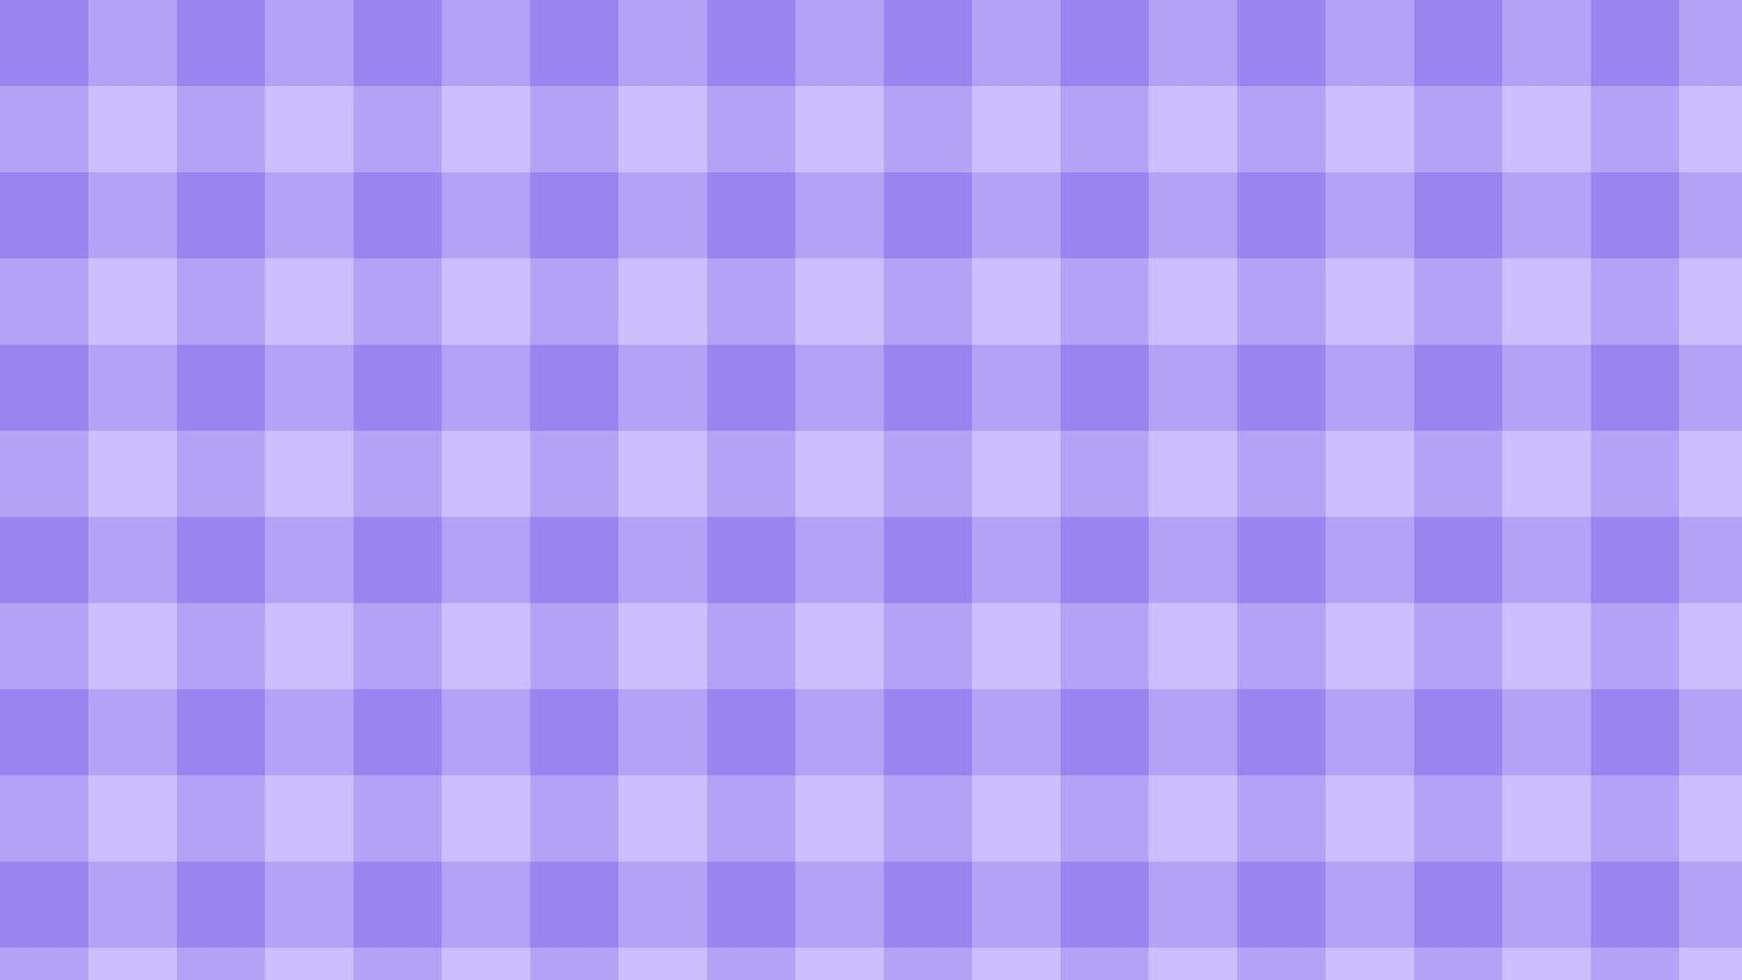 guingão grande roxo, damas, xadrez, ilustração de papel de parede de xadrez violeta estético, perfeito para papel de parede, pano de fundo, cartão postal, plano de fundo para seu projeto vetor